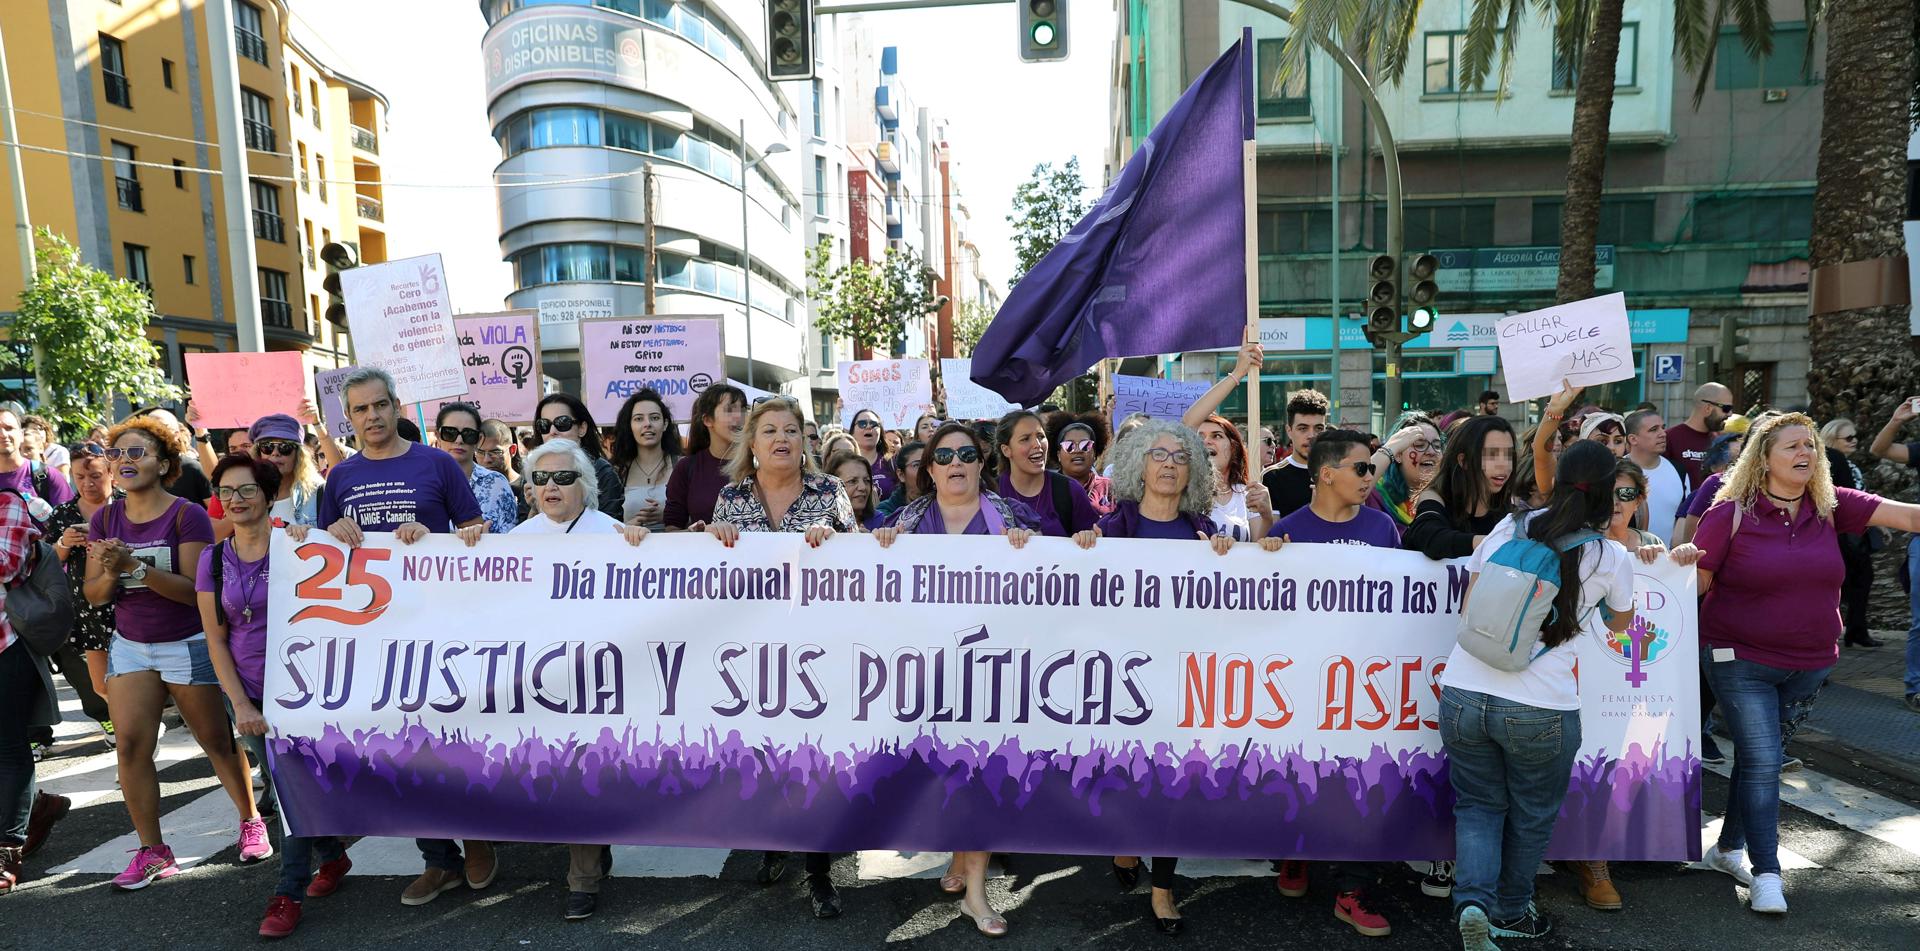 Imagen de archivo de una manifestación en Las Palmas de Gran Canaria con motivo del Día Internacional para la eliminación de la violencia contra las mujeres. EFE/Elvira Urquijo A.